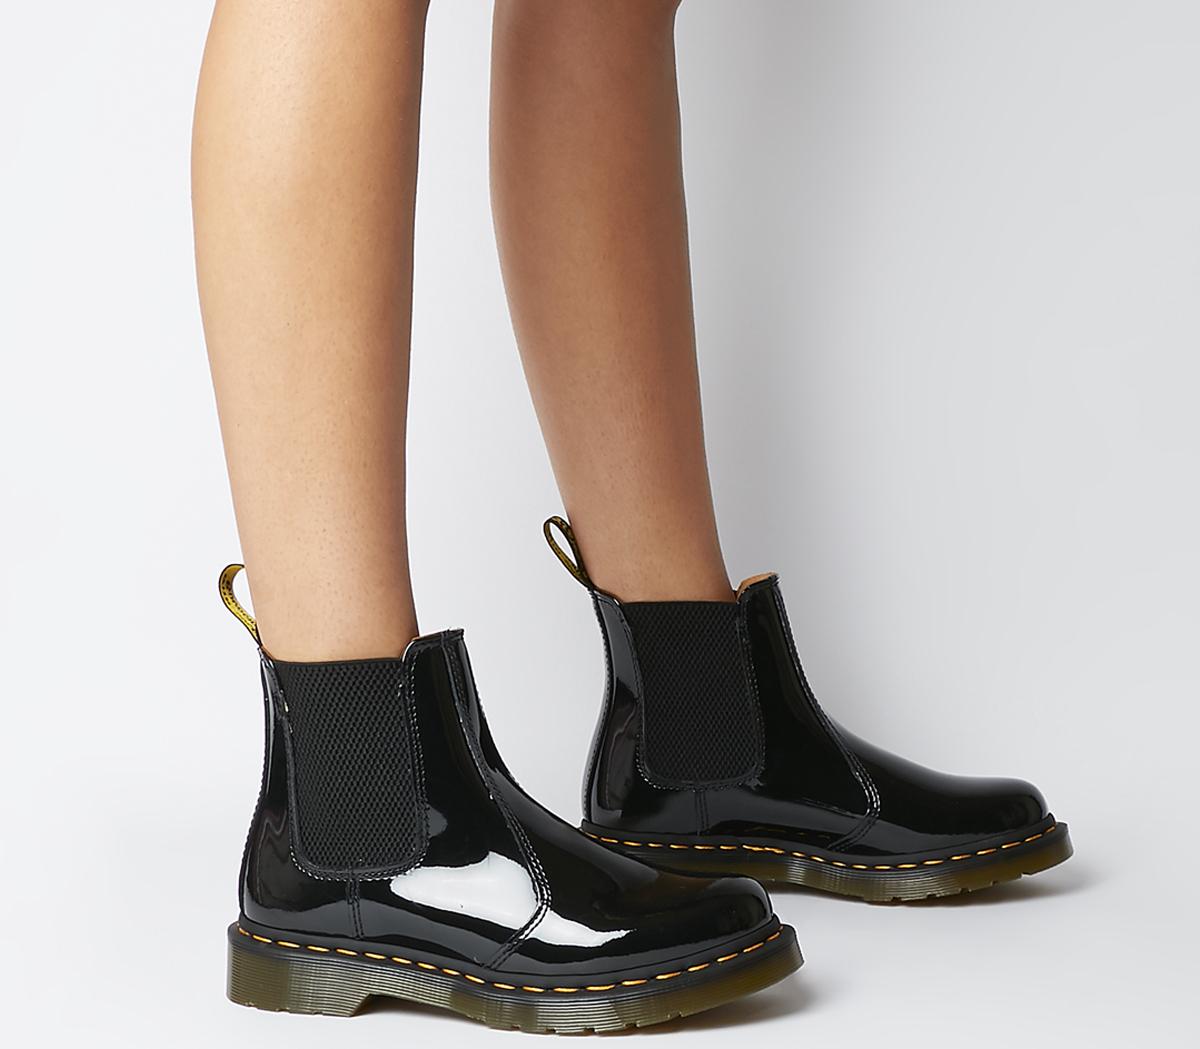 Dr. Martens 2976 Chelsea Black Patent - Women's Ankle Boots